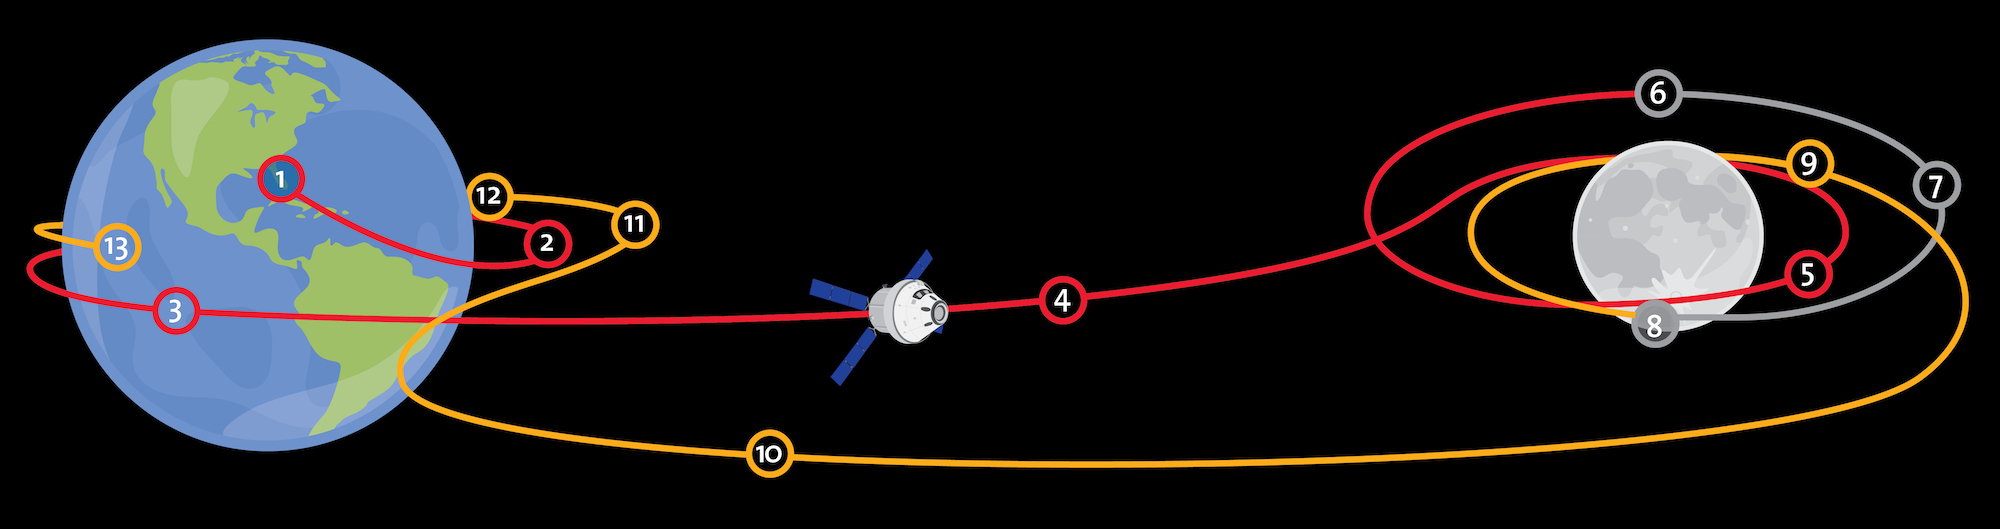 Le plan de vol d’Artemis I. Crédit : ESA/K. Oldenburg